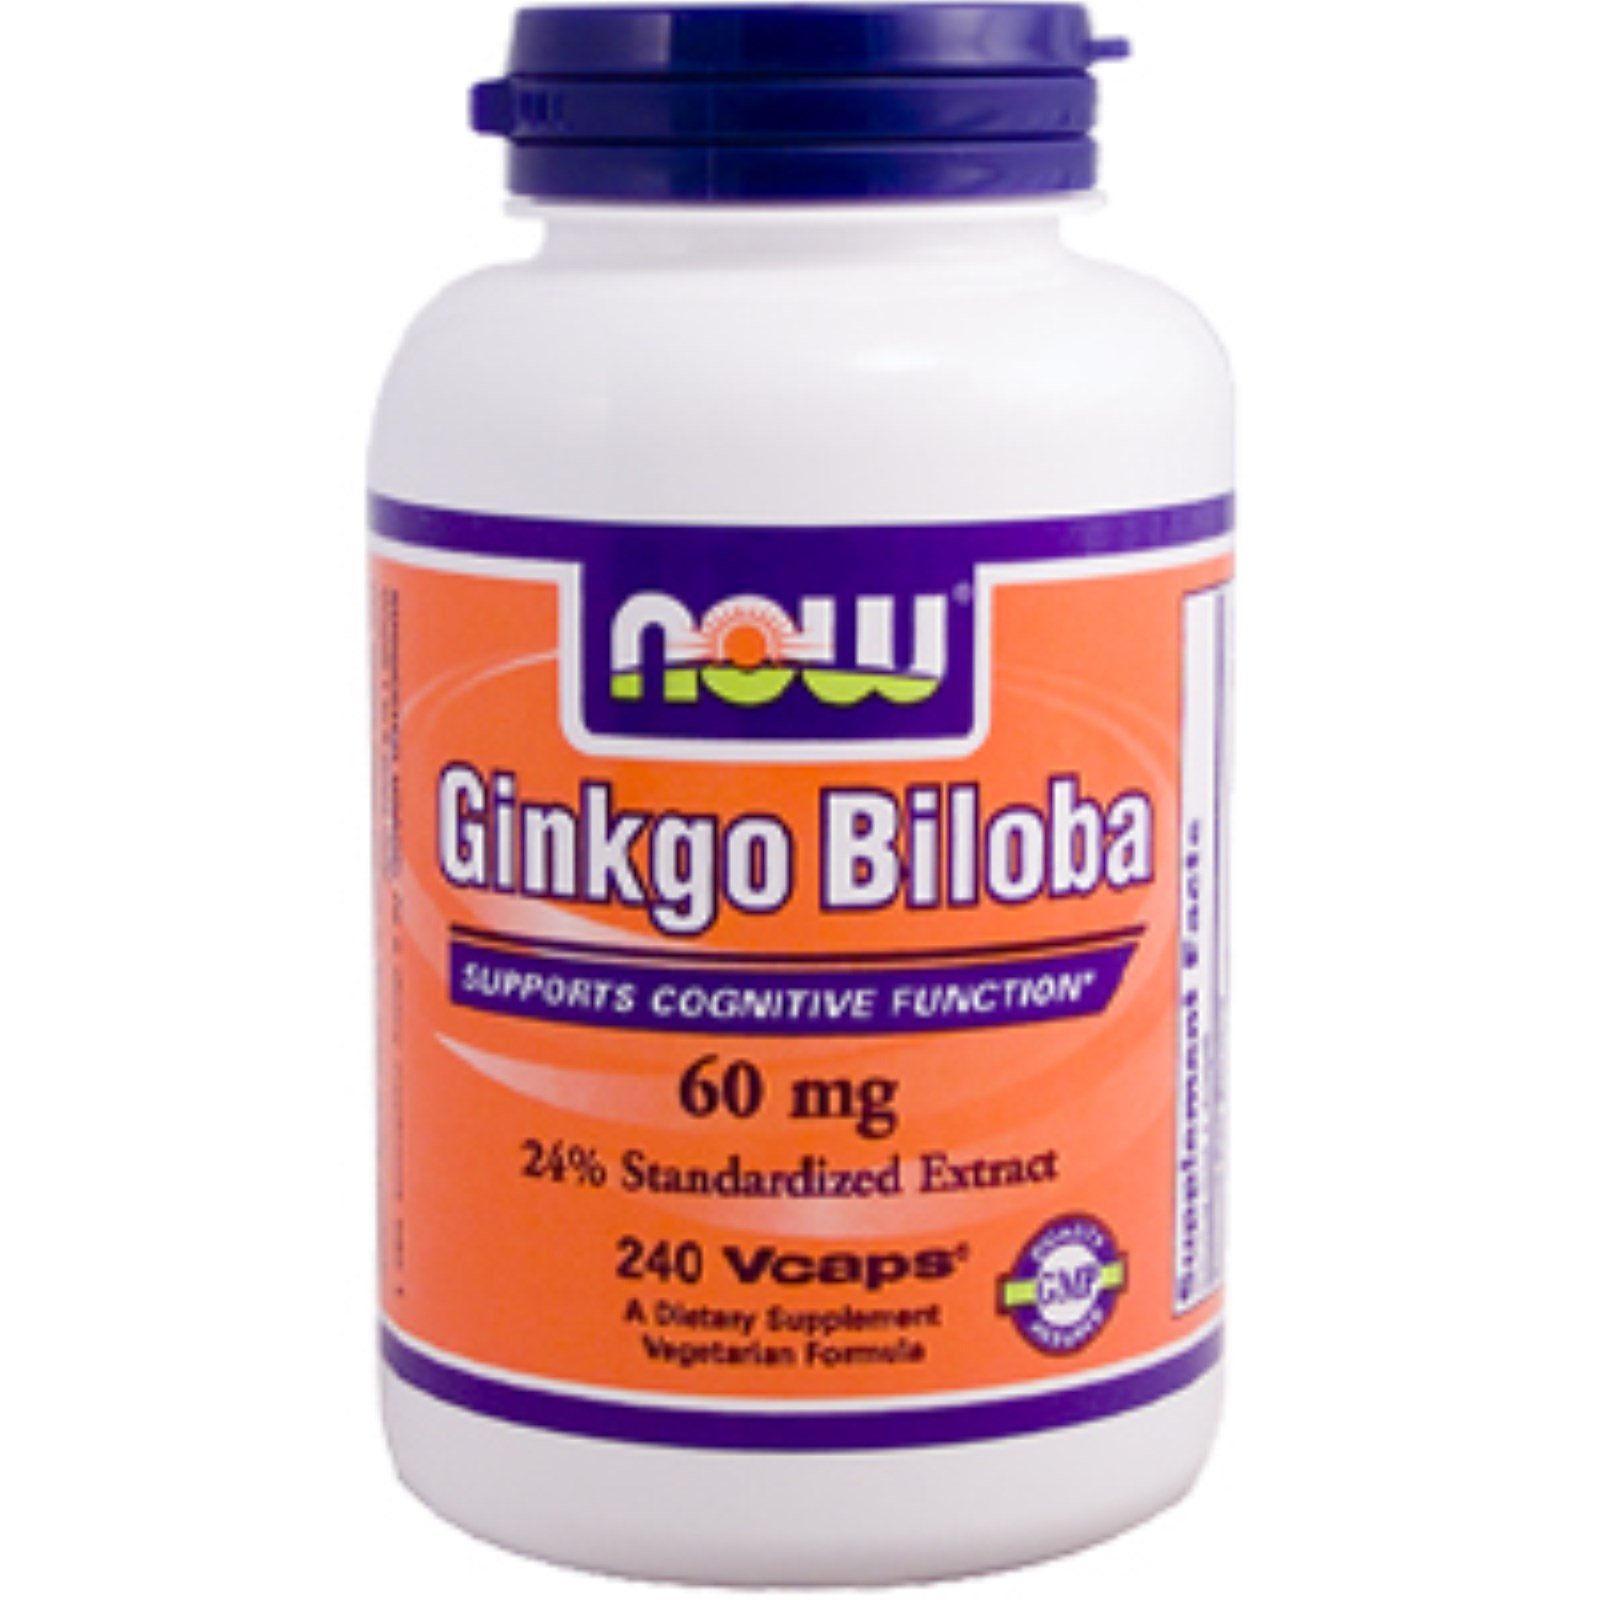 Ginkgo Biloba 60 mg, 240 piezas, Now. Suplementos especiales. 